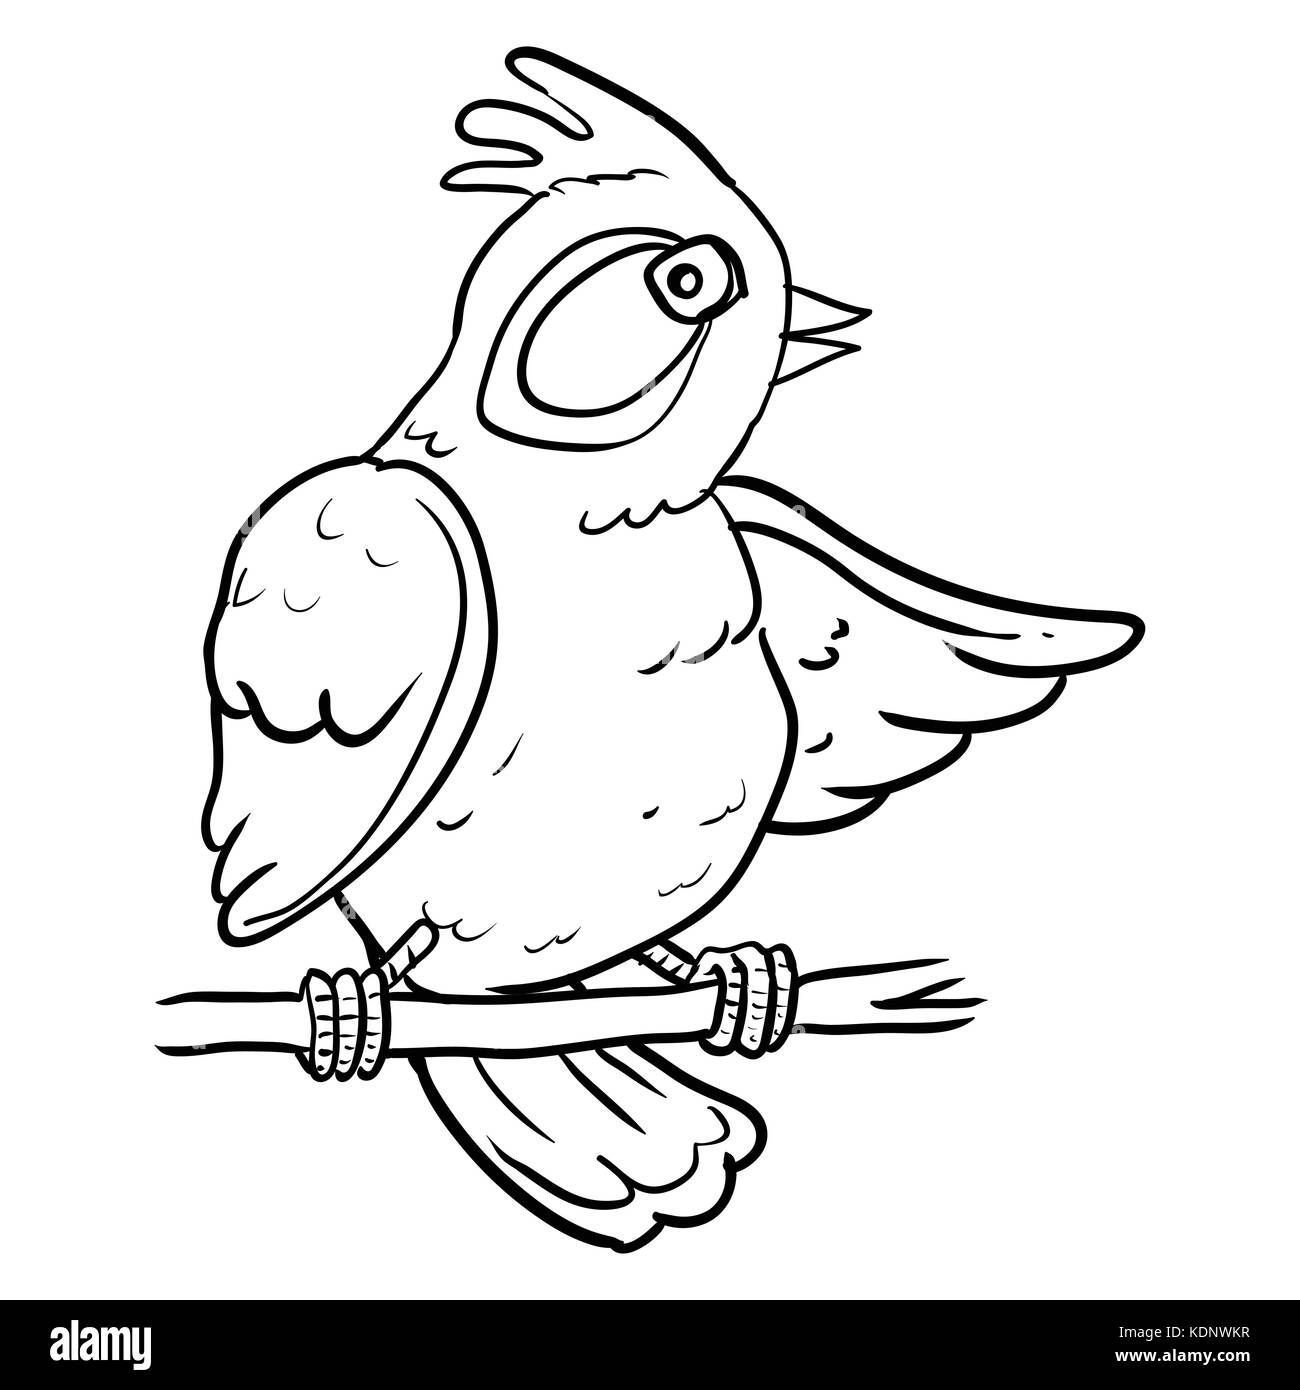 Dessin à la main d'oiseaux cartoon sur branch tree, croquis design for coloring book.vector illustration. - Vector illustration Illustration de Vecteur